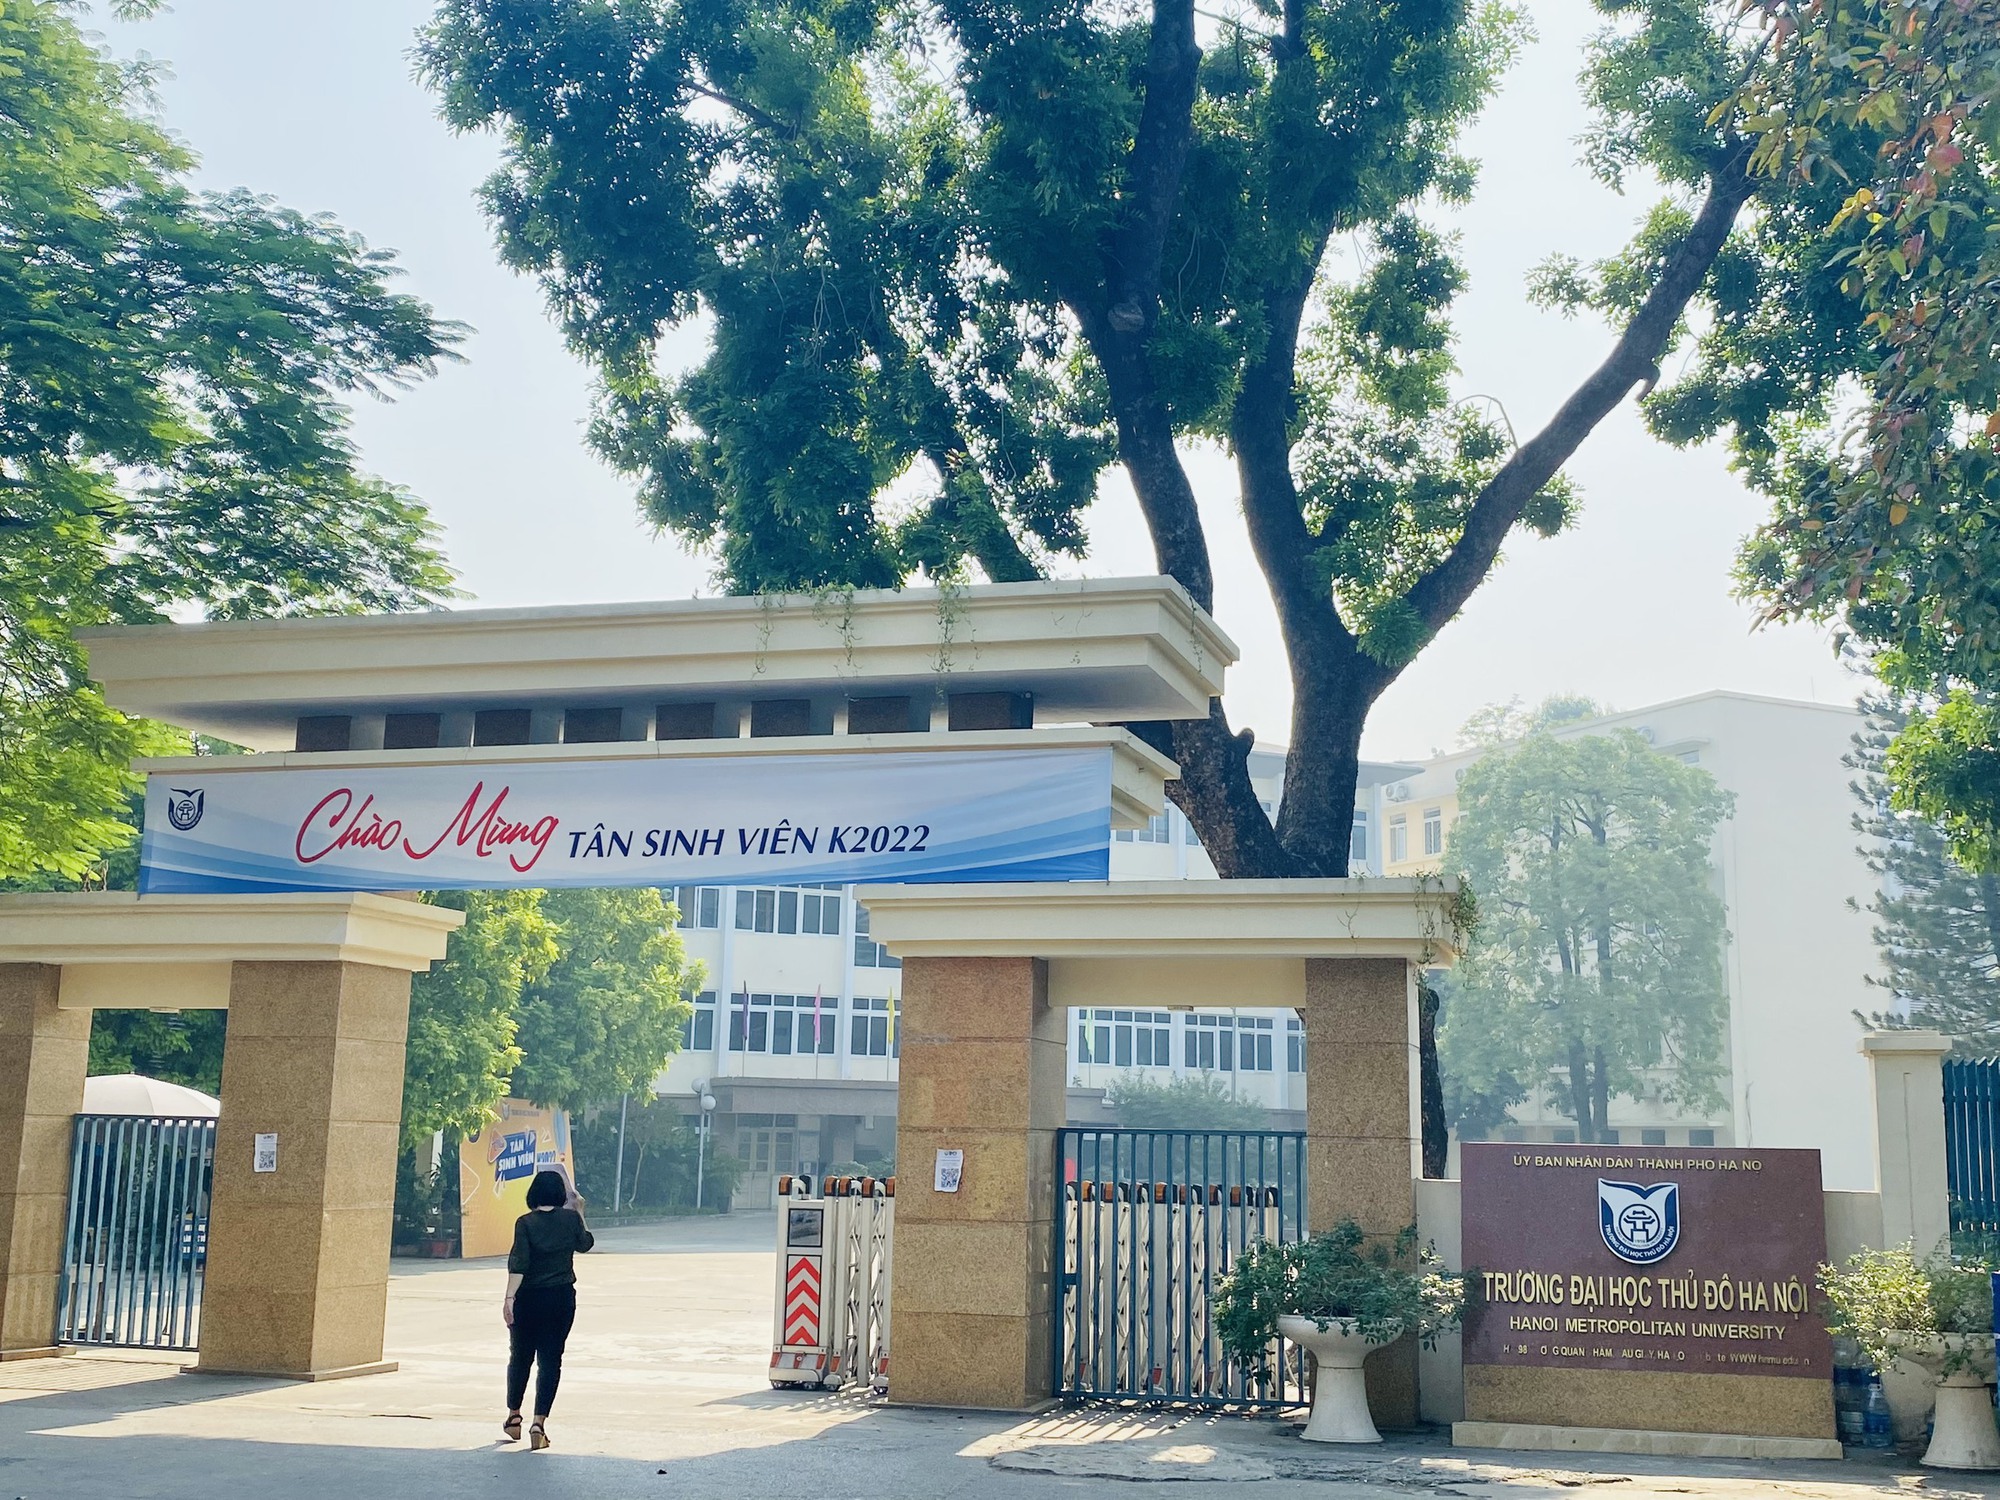 UBND Thành phố Hà Nội ban hành quyết định về việc nâng cao chất lượng đào tạo của Trường Đại học Thủ đô Hà Nội